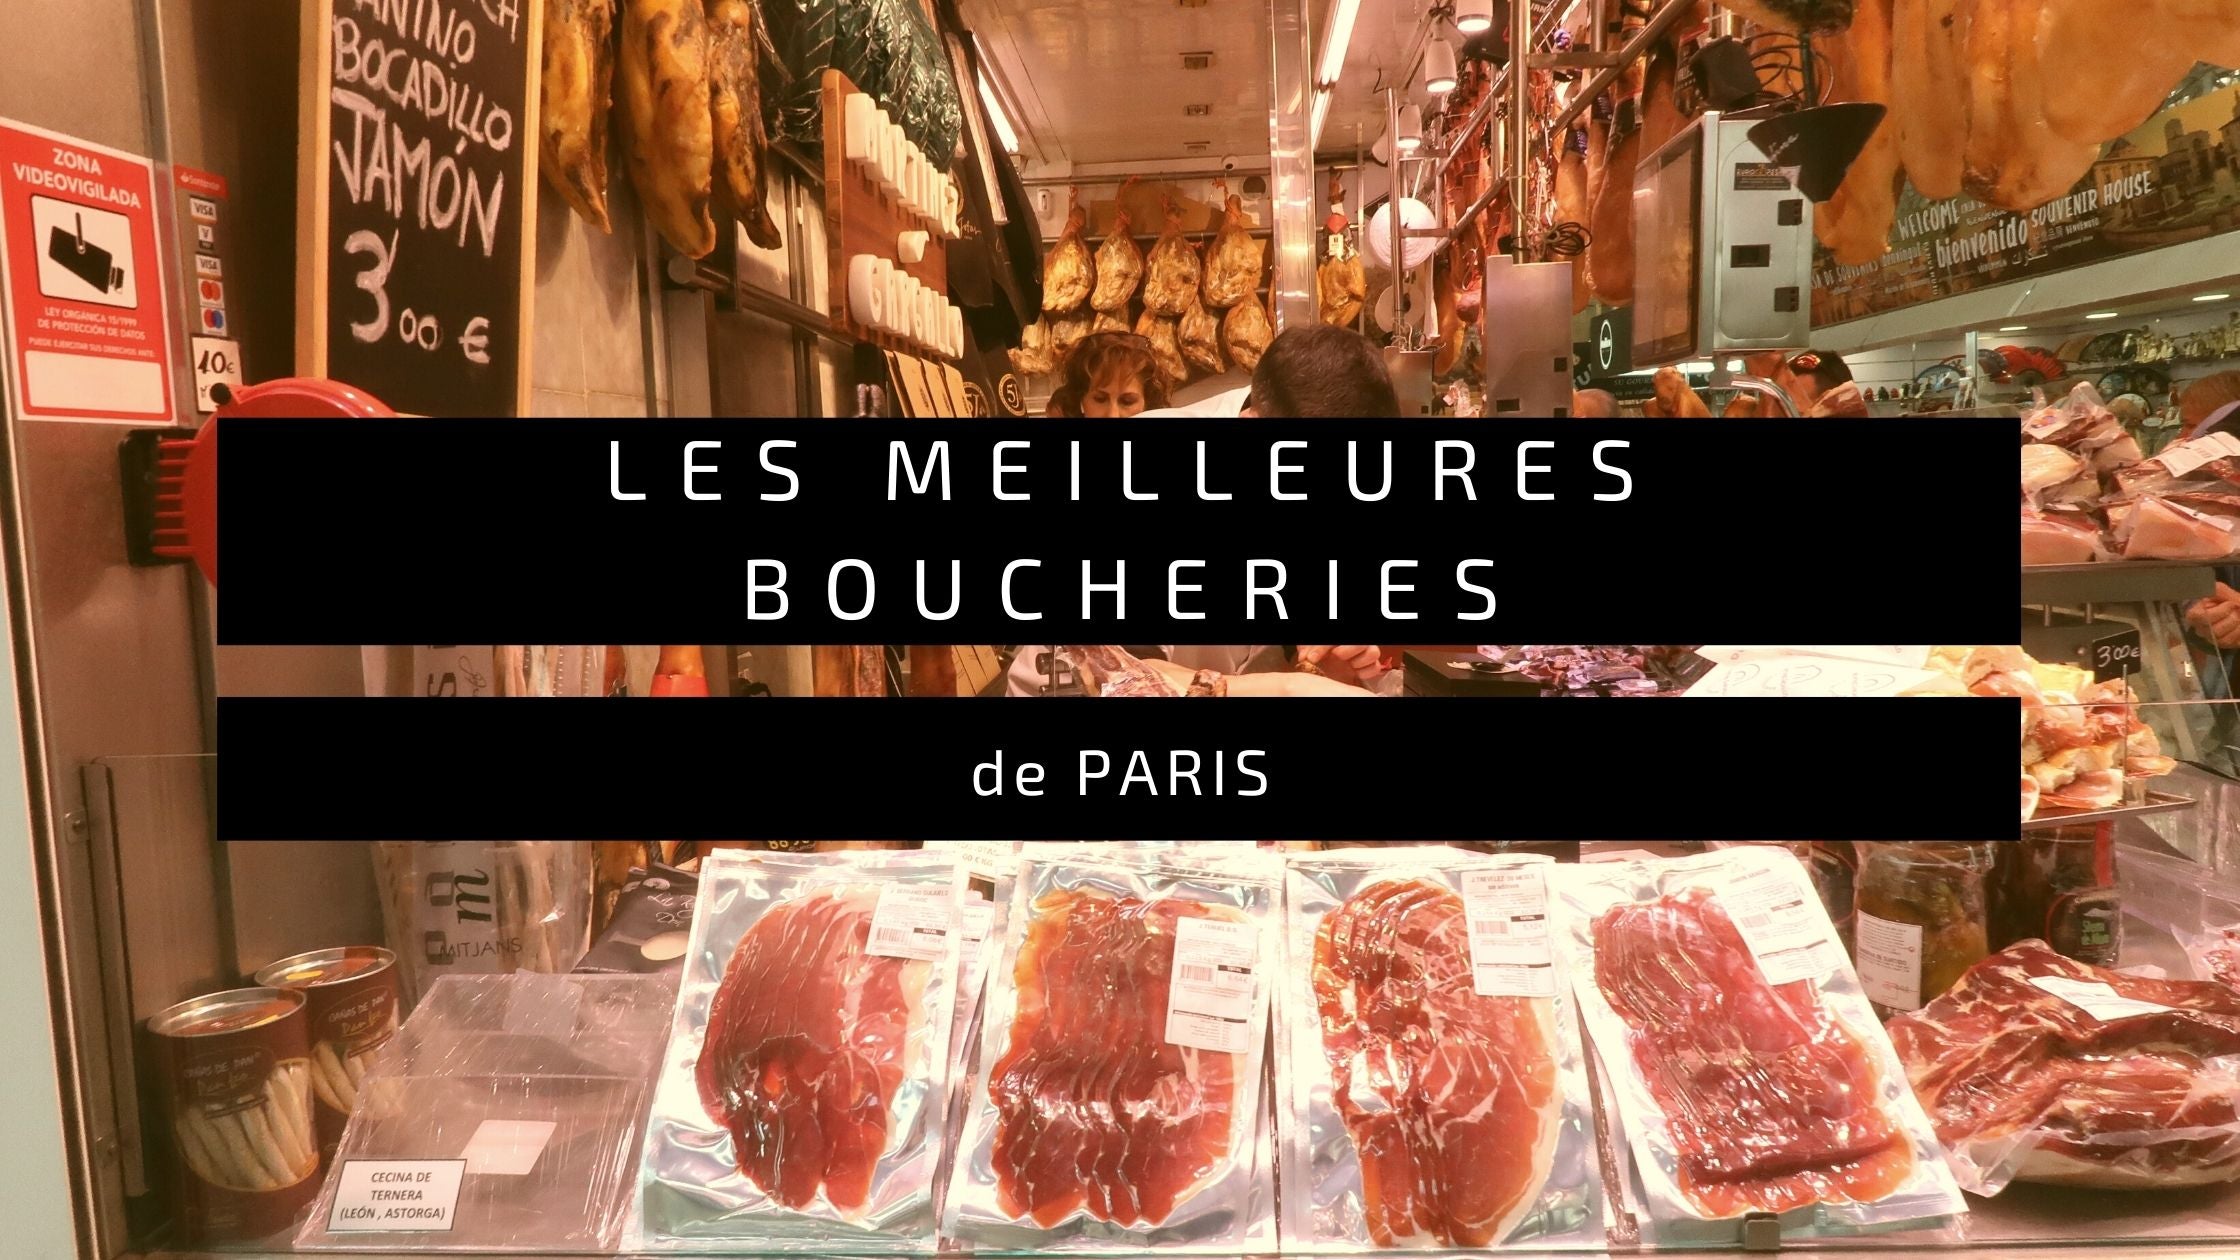 Les Meilleures Boucheries de Paris